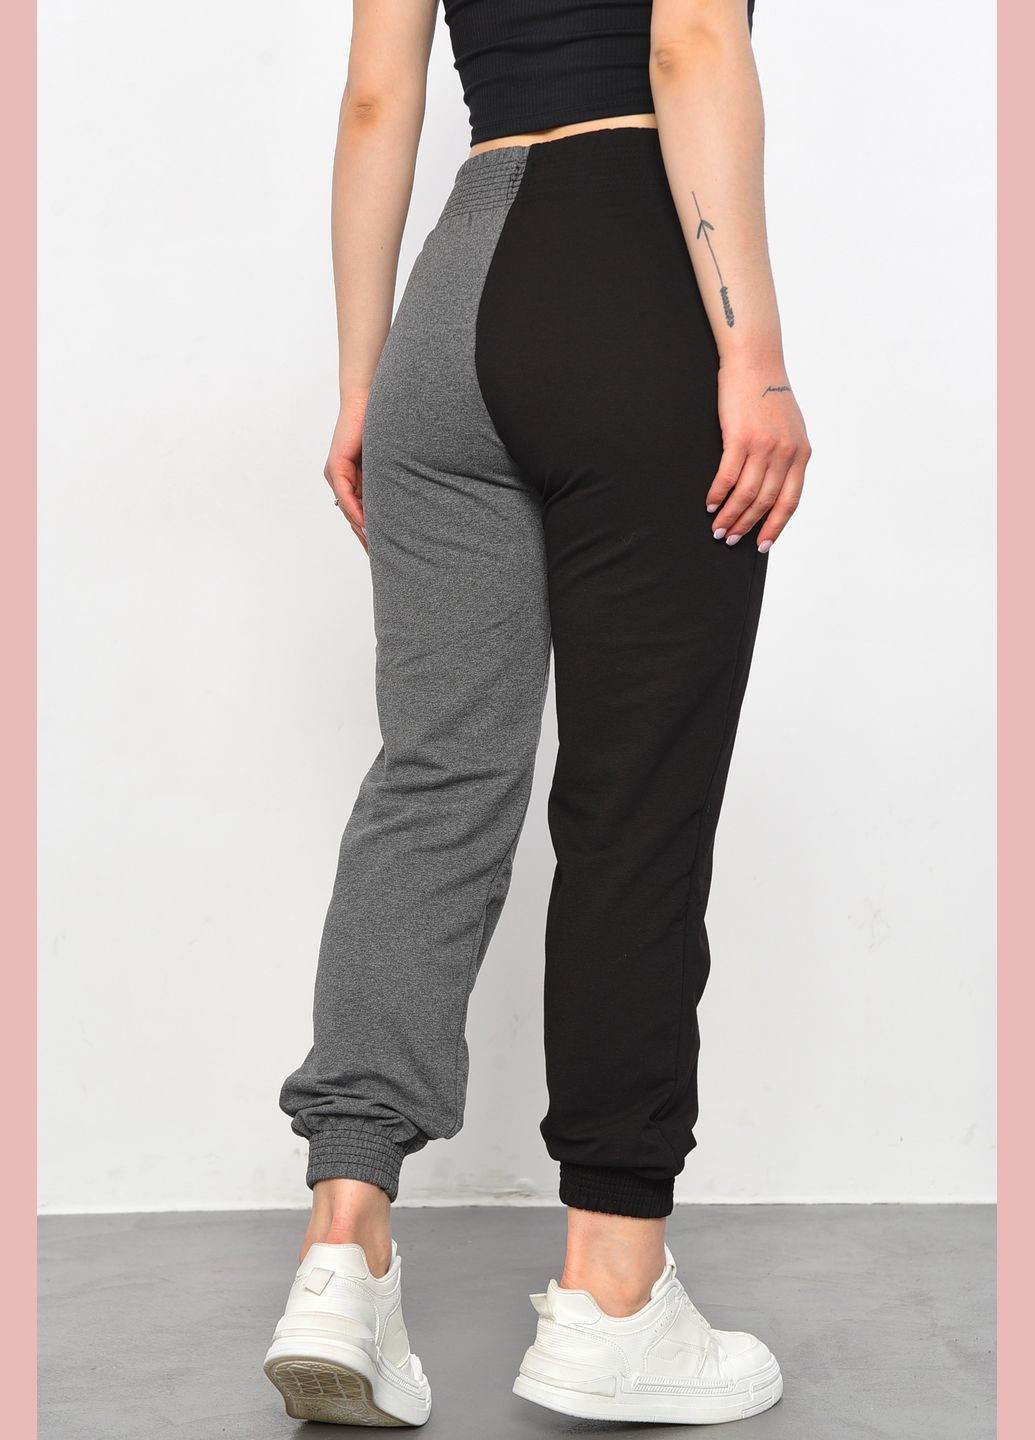 Спортивные штаны женские черно-серого цвета Let's Shop (293476660)